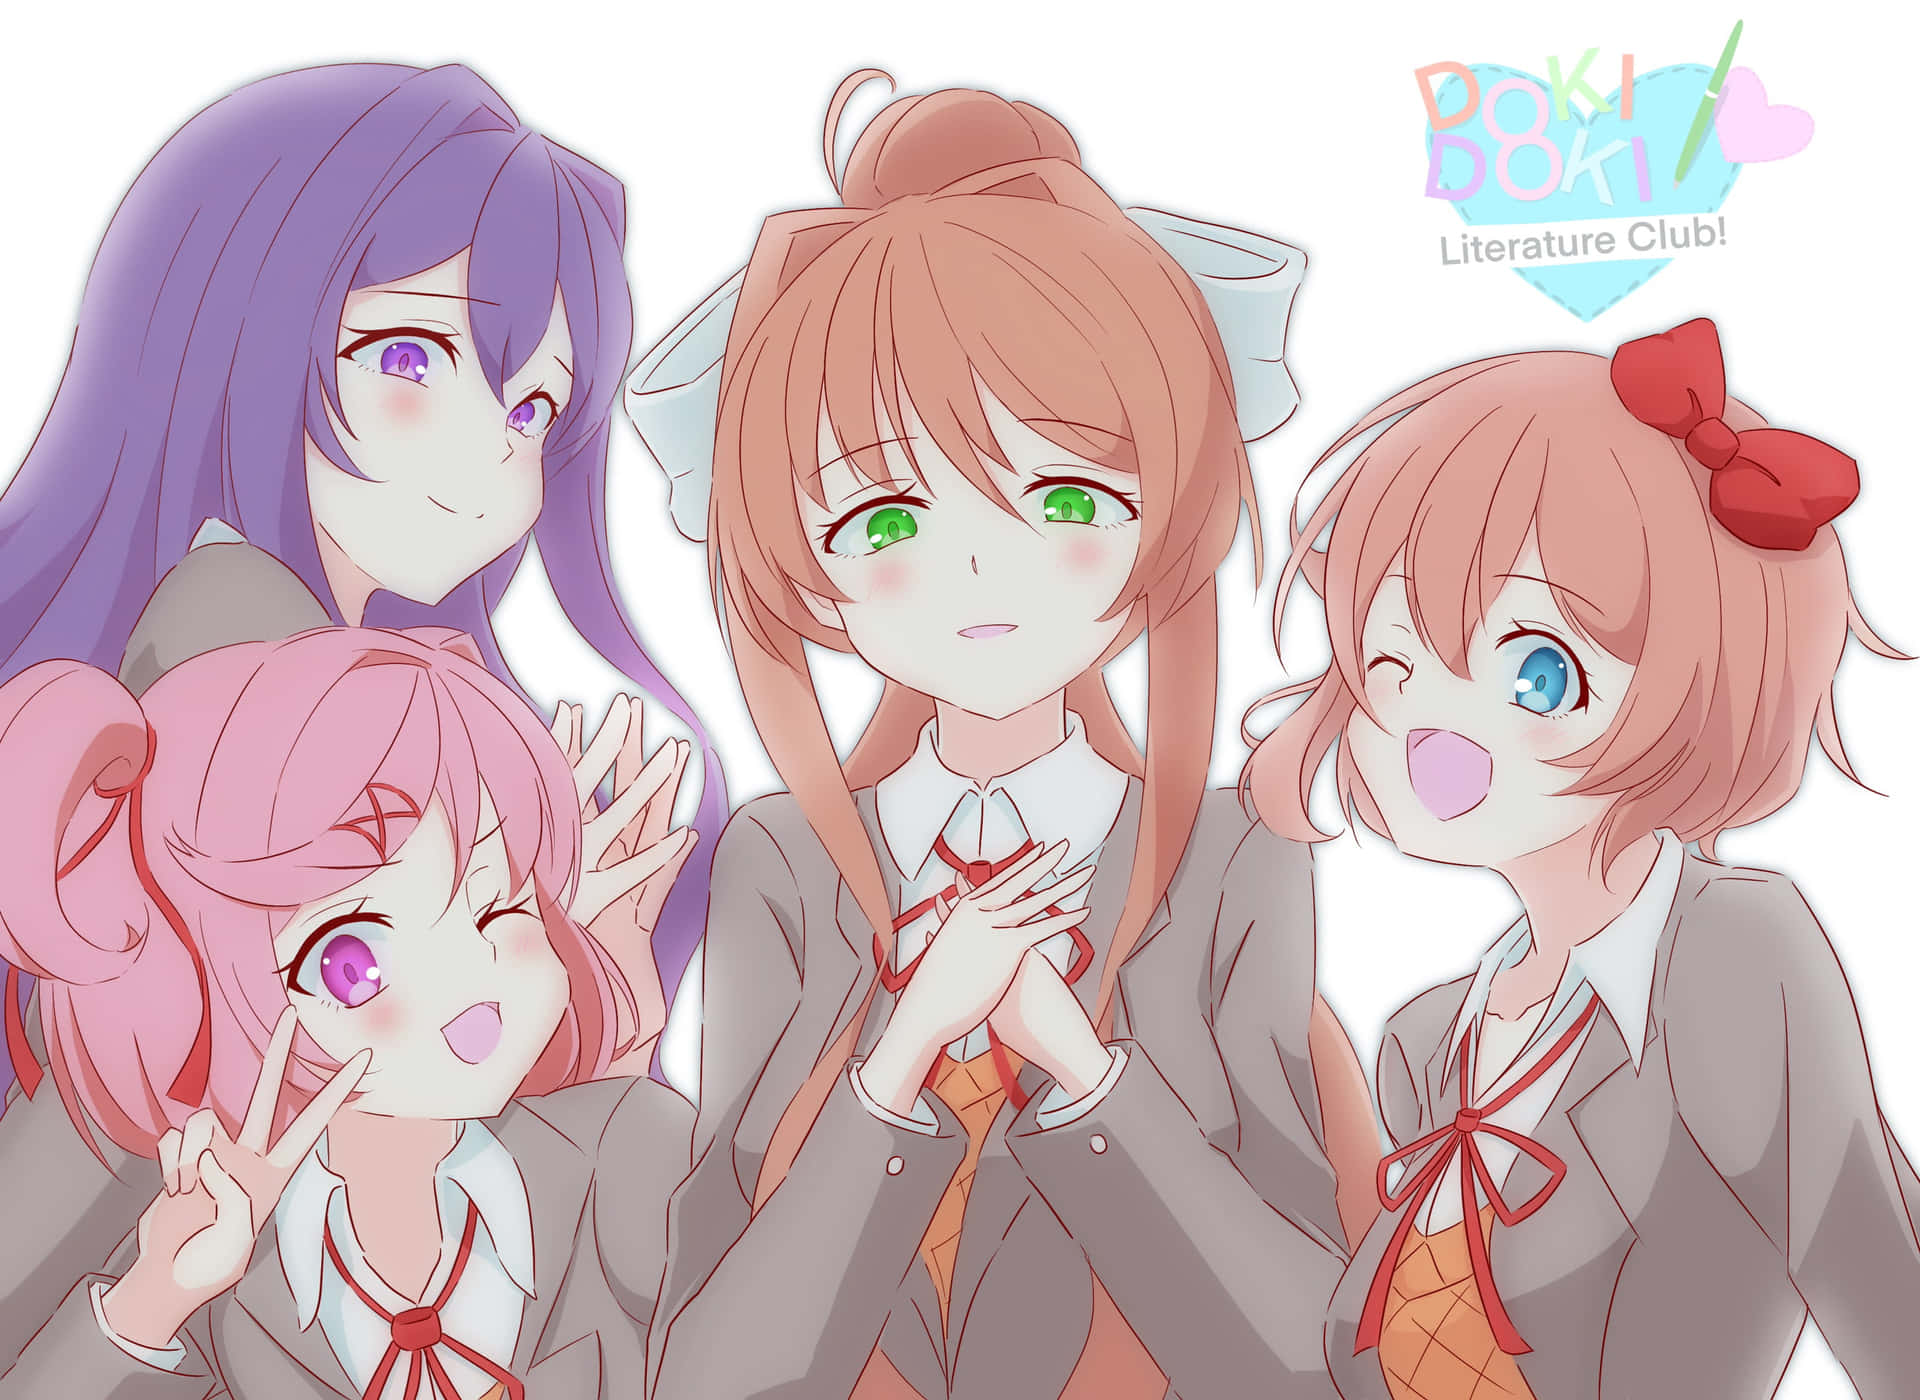 Umgrupo De Garotas De Anime Em Uniformes Escolares